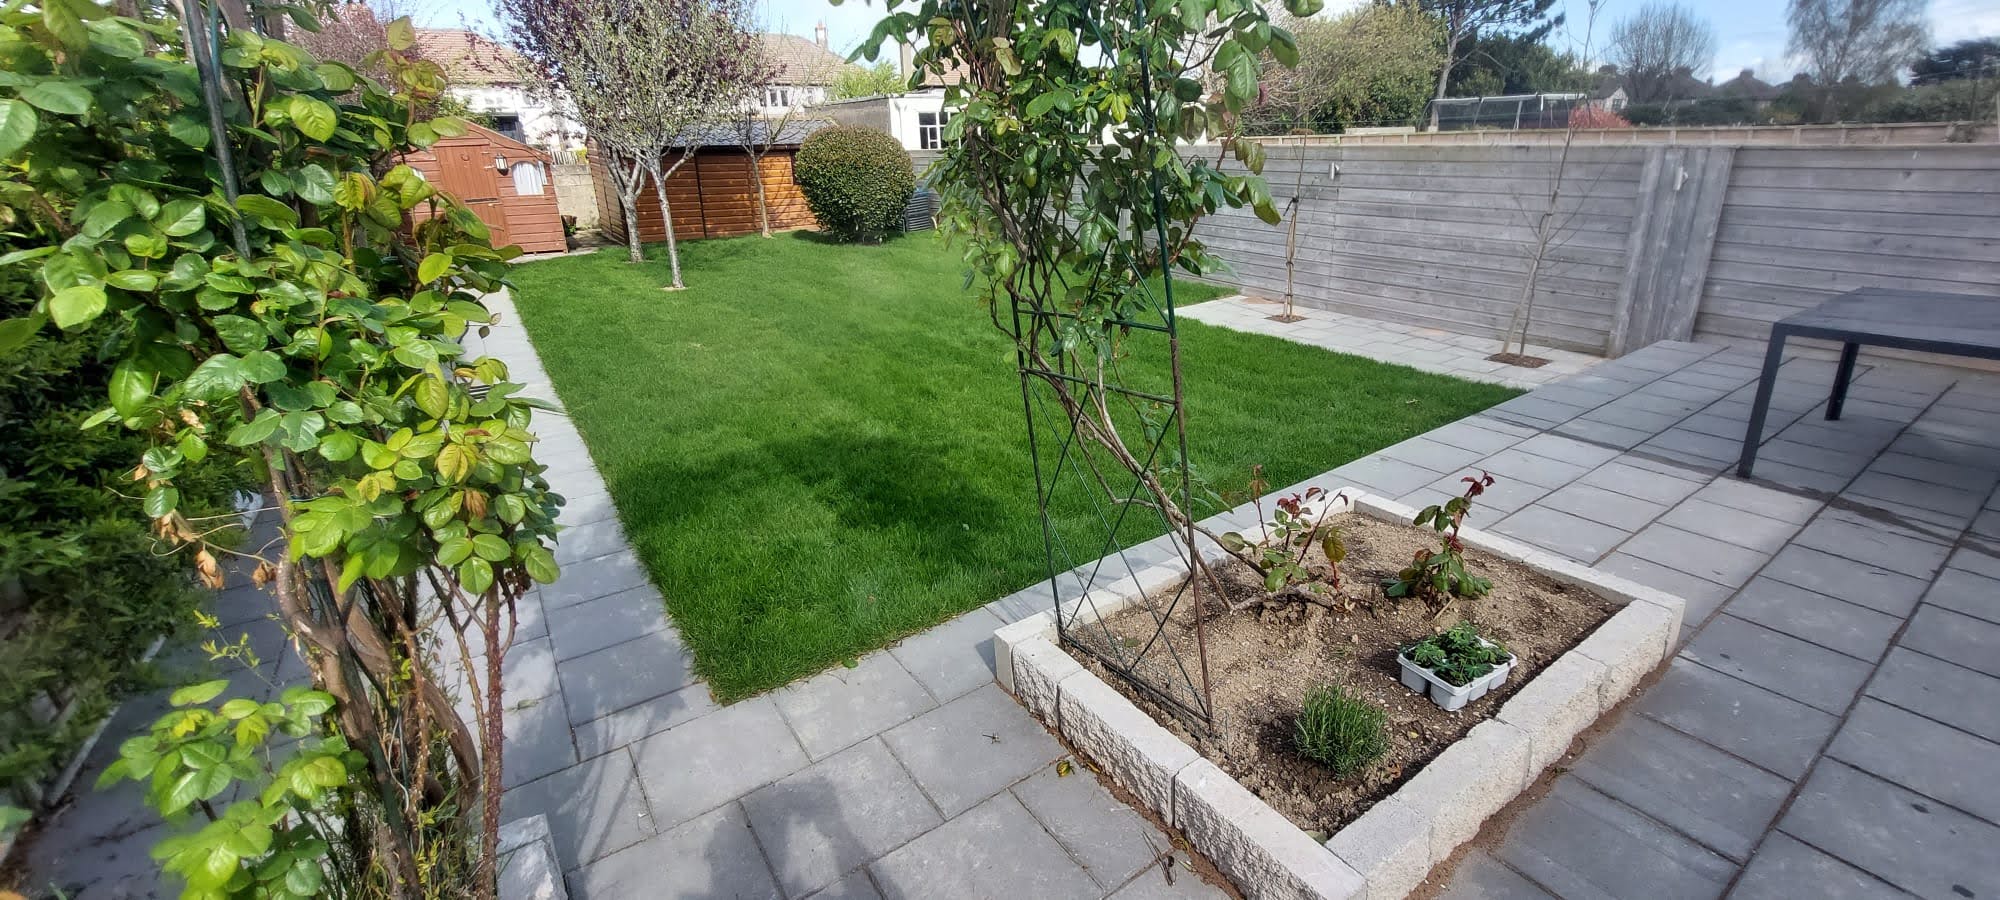 A clean garden and patio